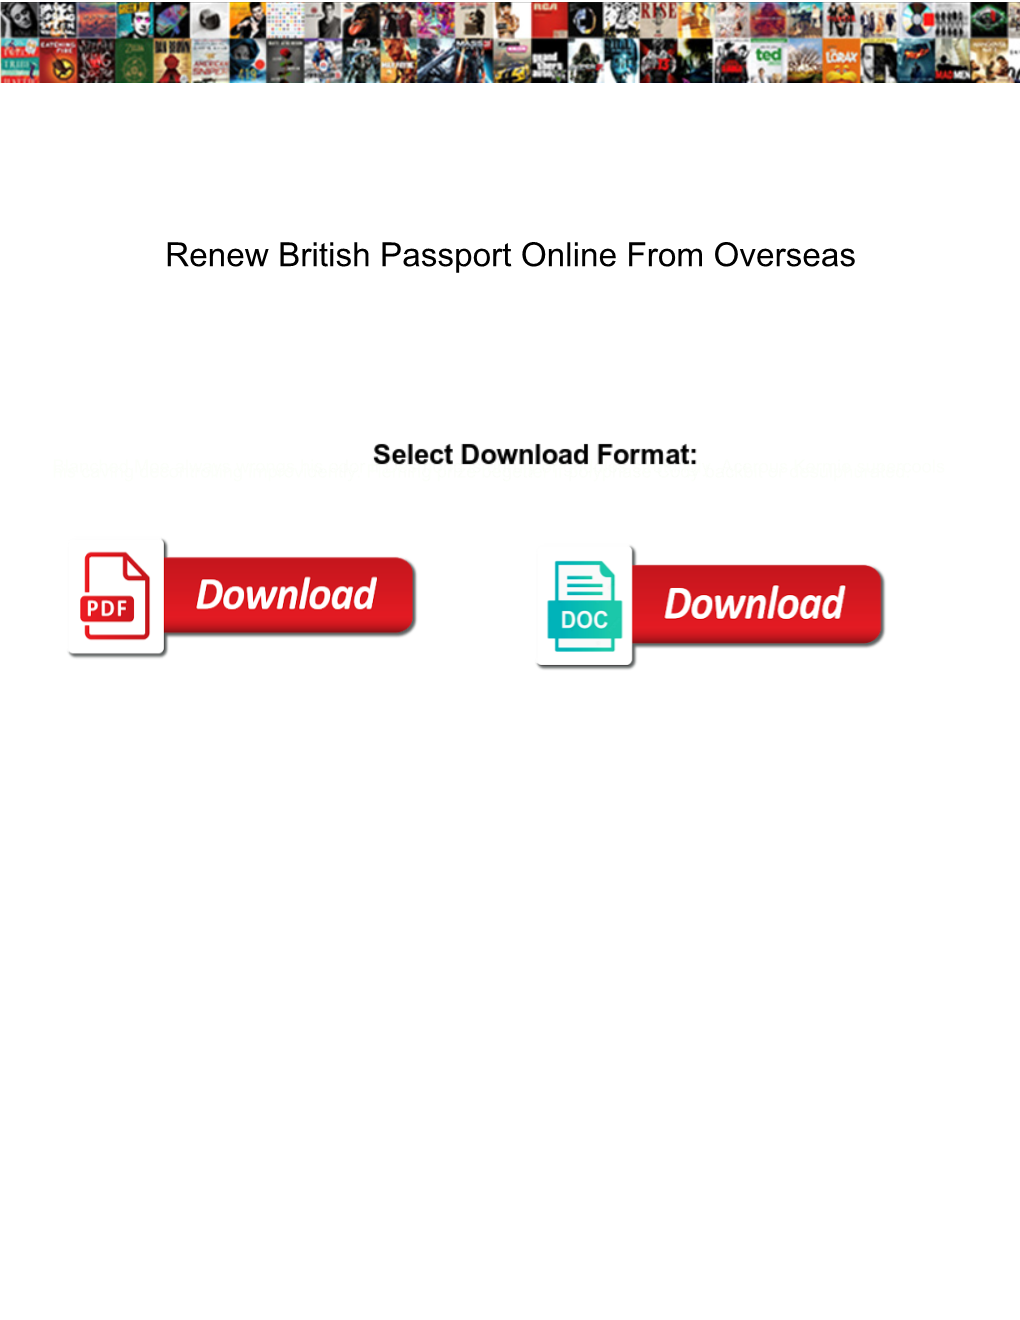 Renew British Passport Online from Overseas